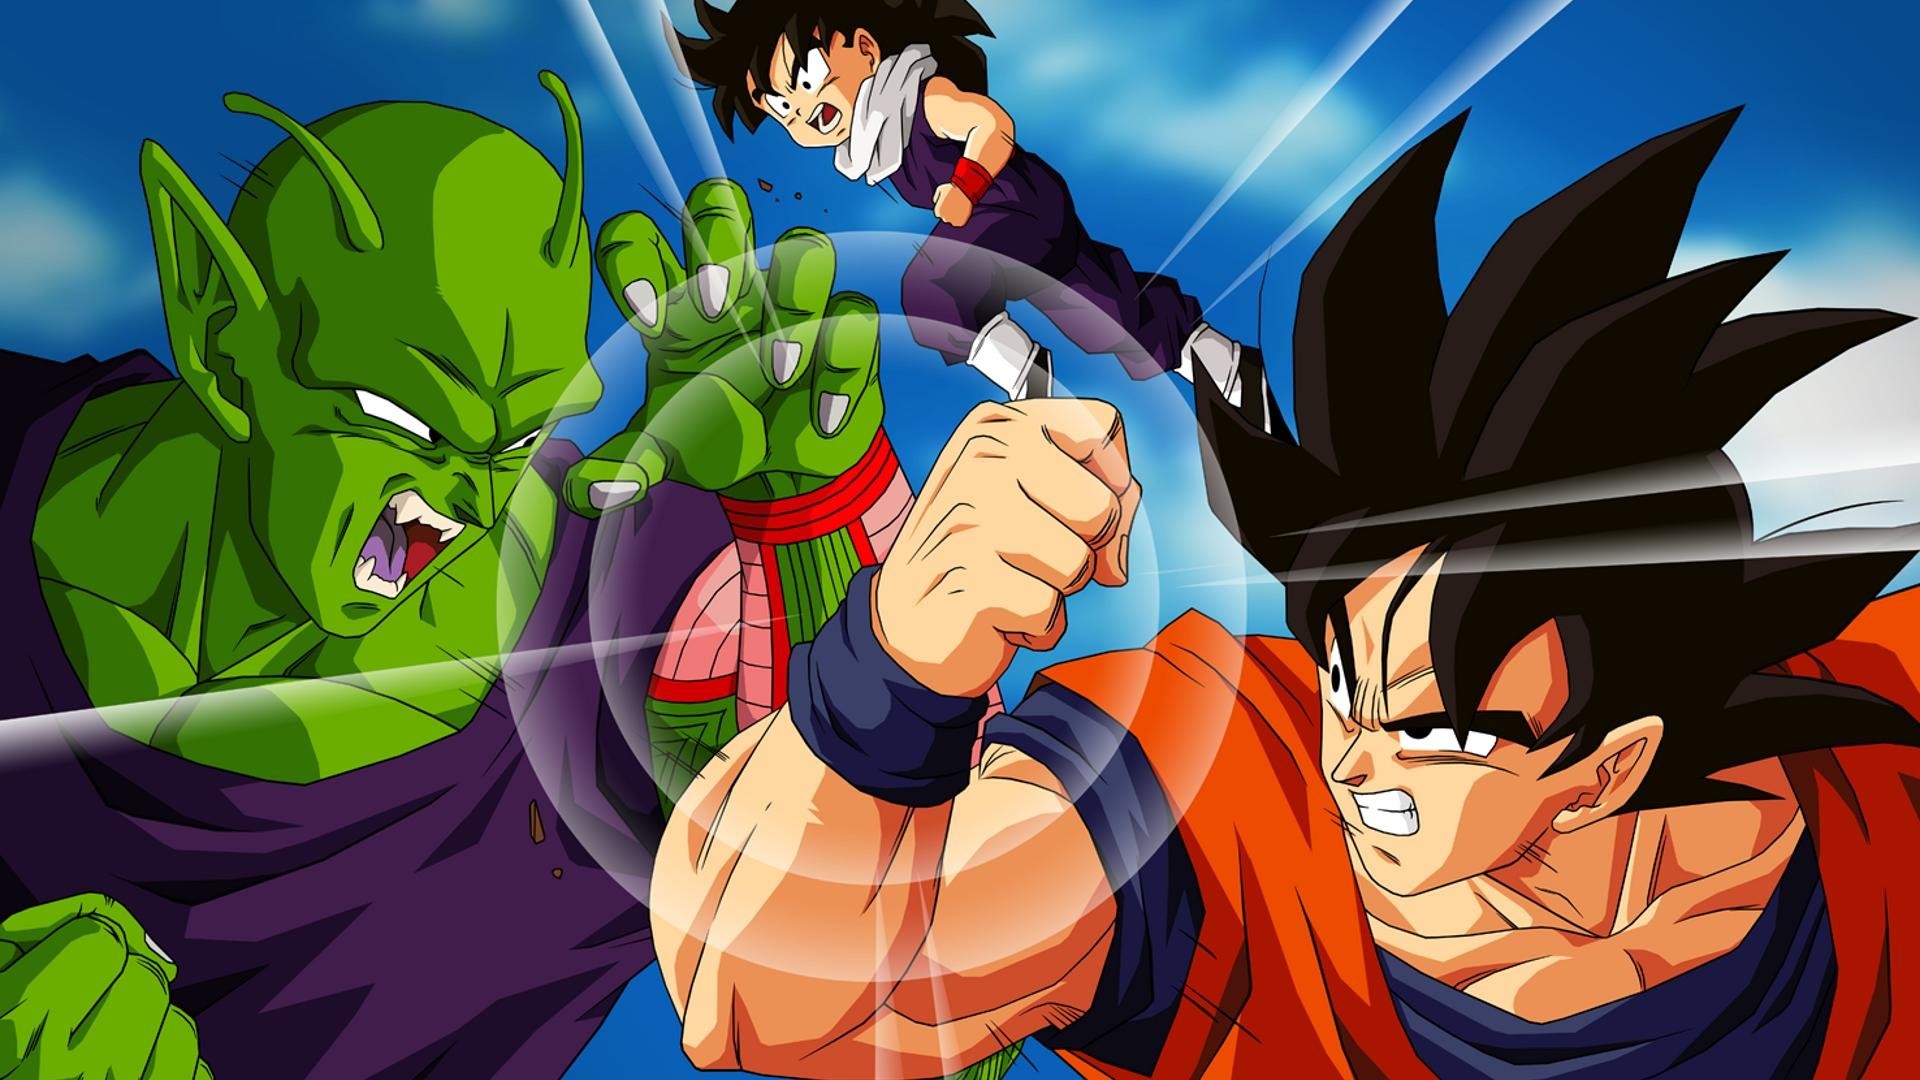 Baixe grtis papel de parede do seriado anime Dragon Ball Z Goku versus Piccolo em hd